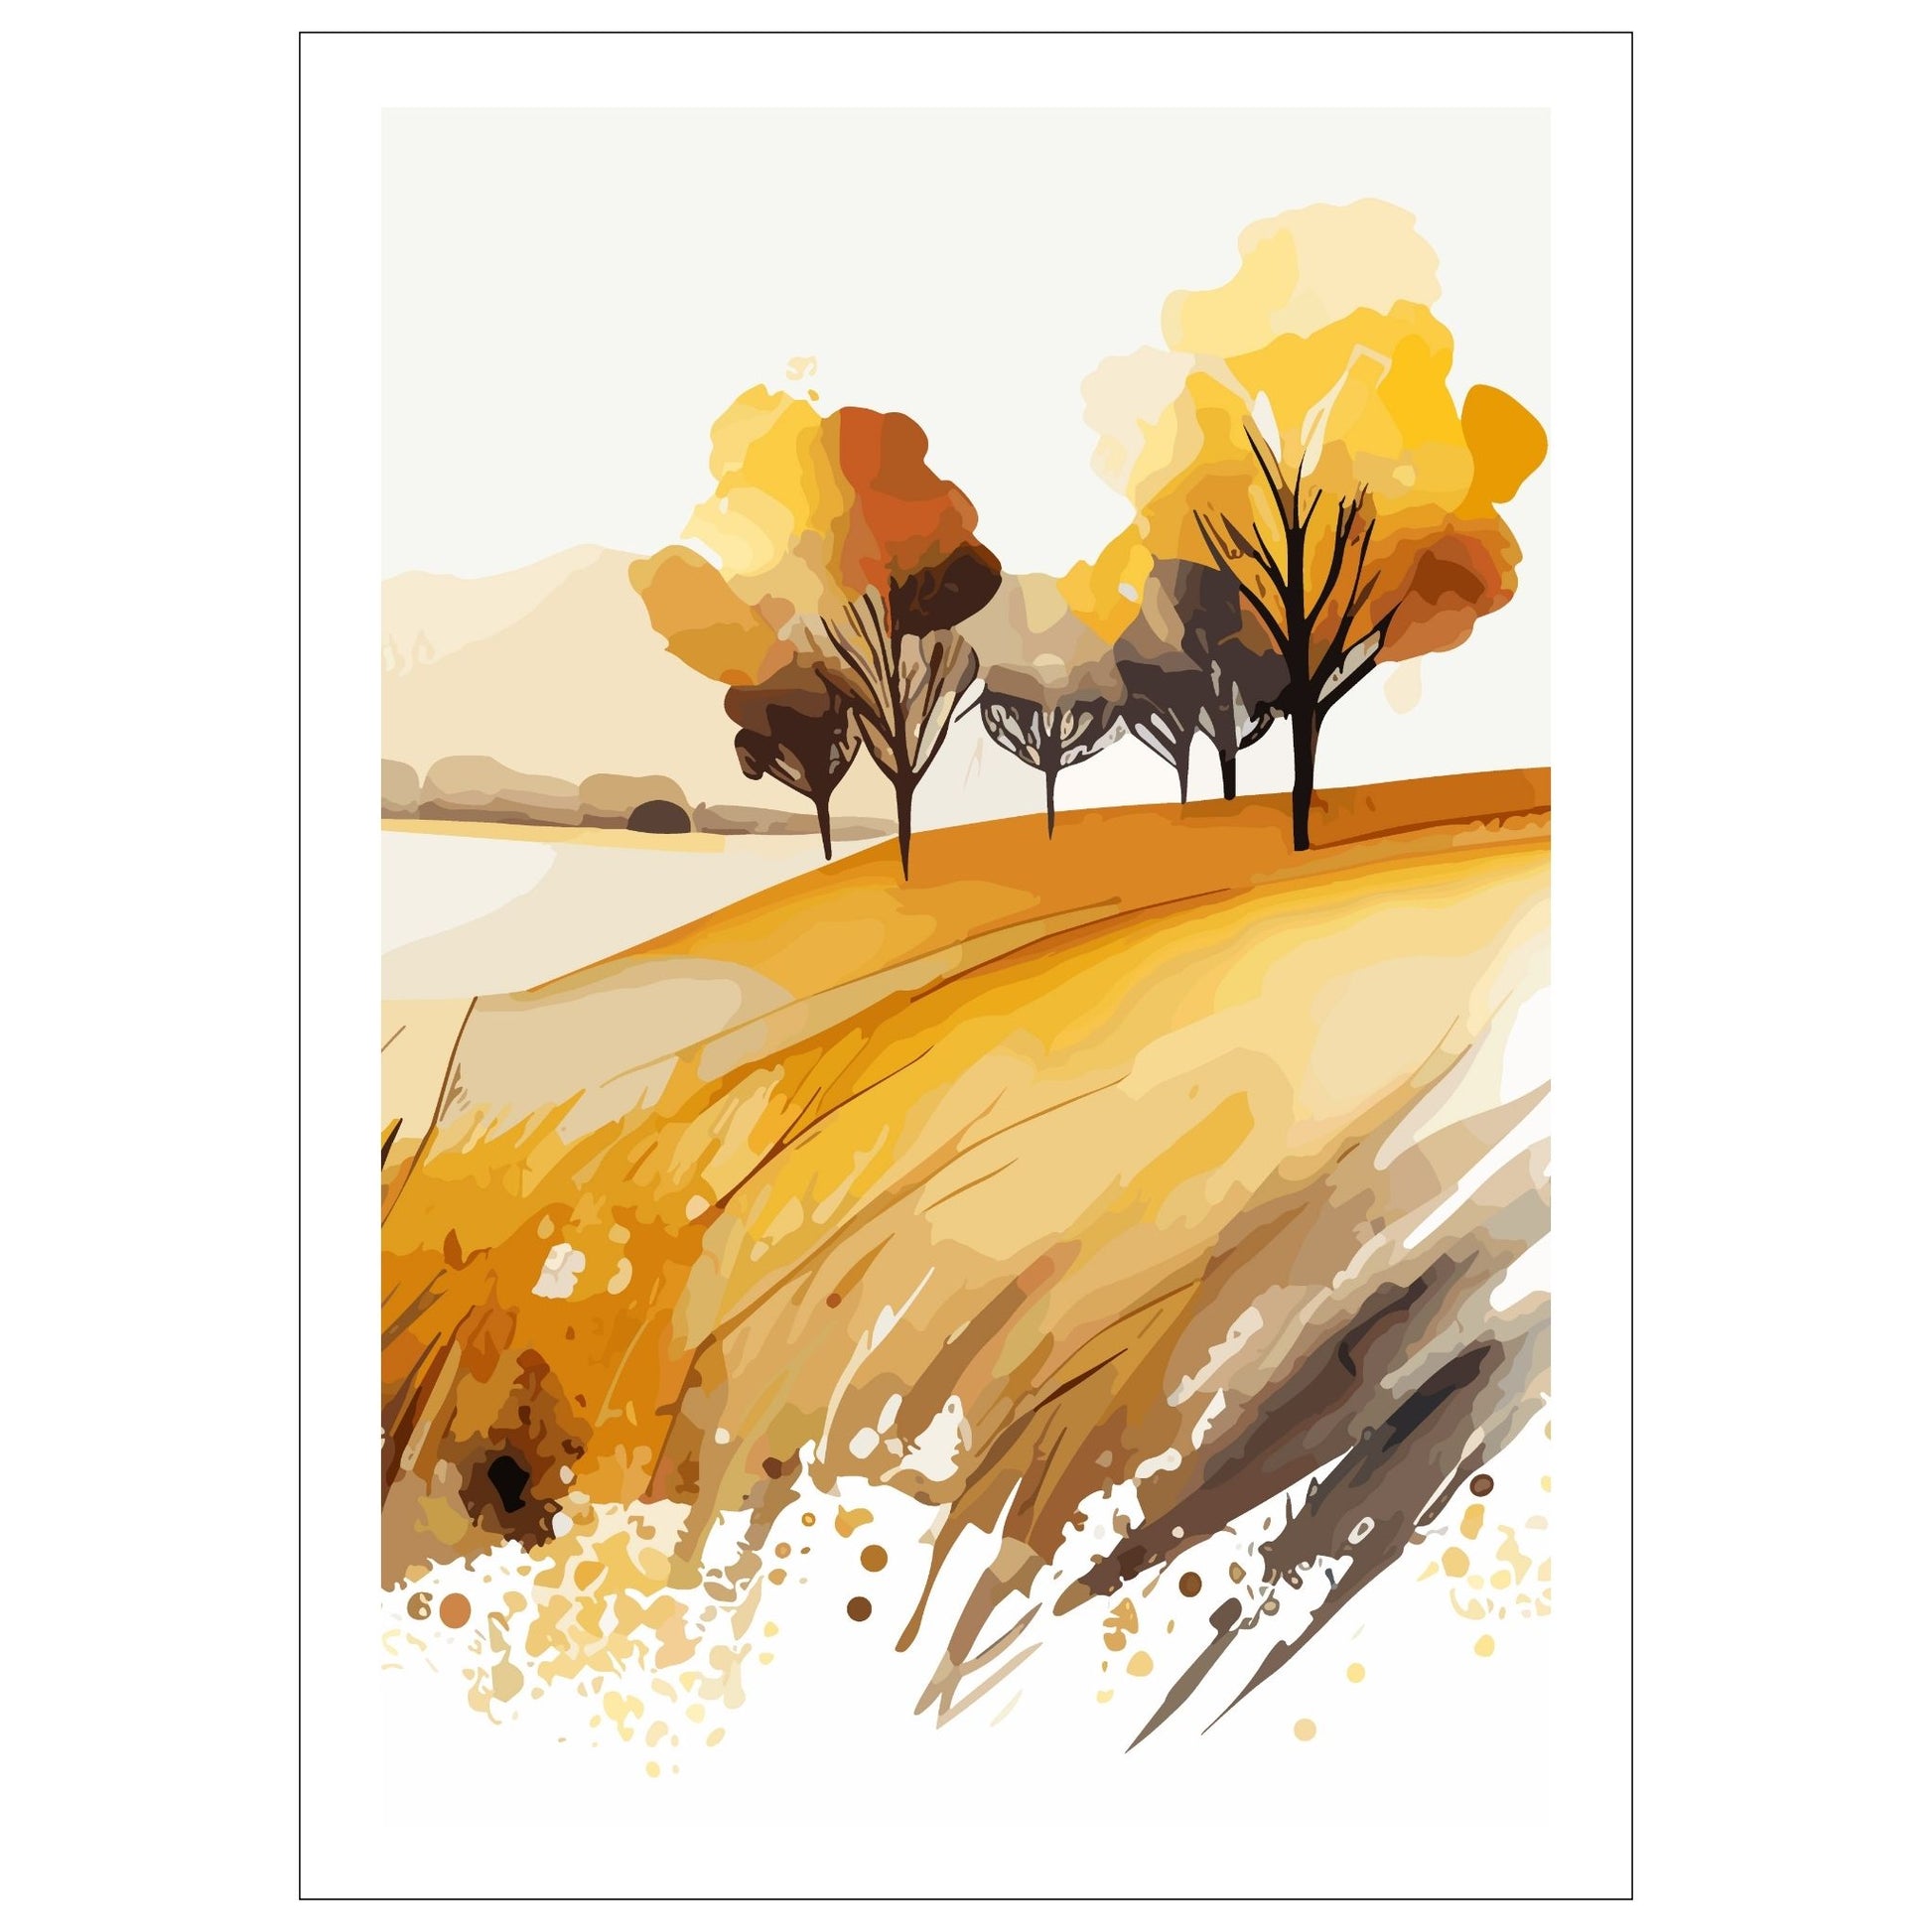 White Fields er en serie med grafisk akvarell. Motivet er åkerlandskap i duse orange, beige og svarte nyanser. Plakaten har en hvit kant som gir dybde og fremhever motivet.